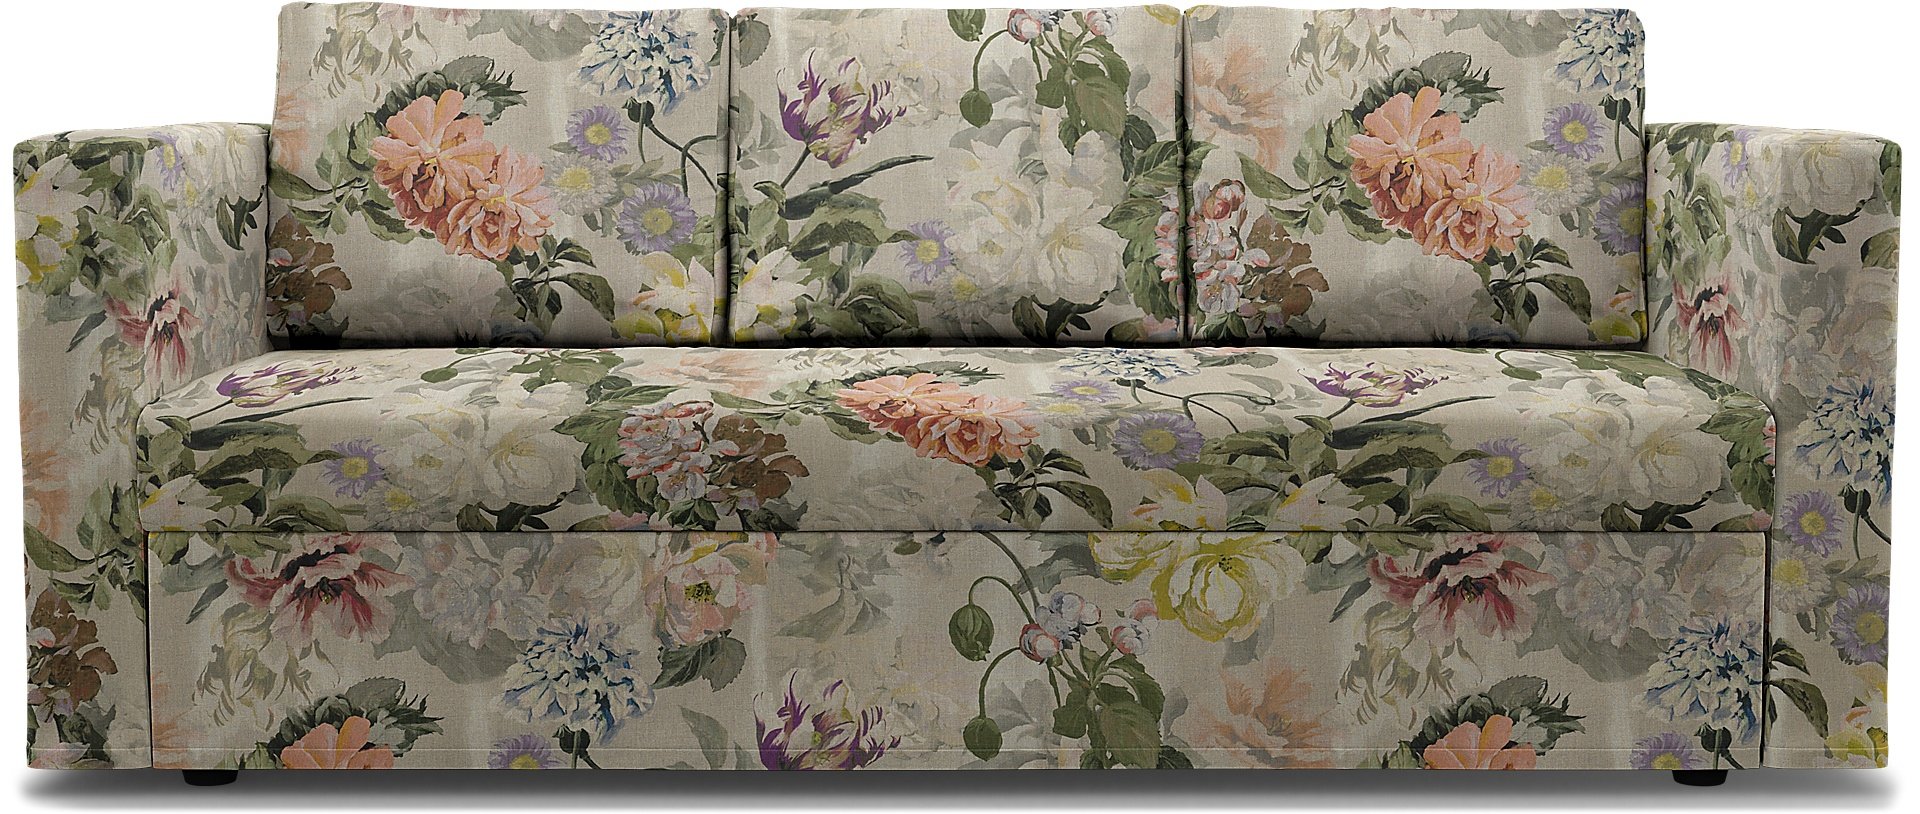 IKEA - Friheten 3 Seater Sofa Bed Cover, Delft Flower - Tuberose, Linen - Bemz